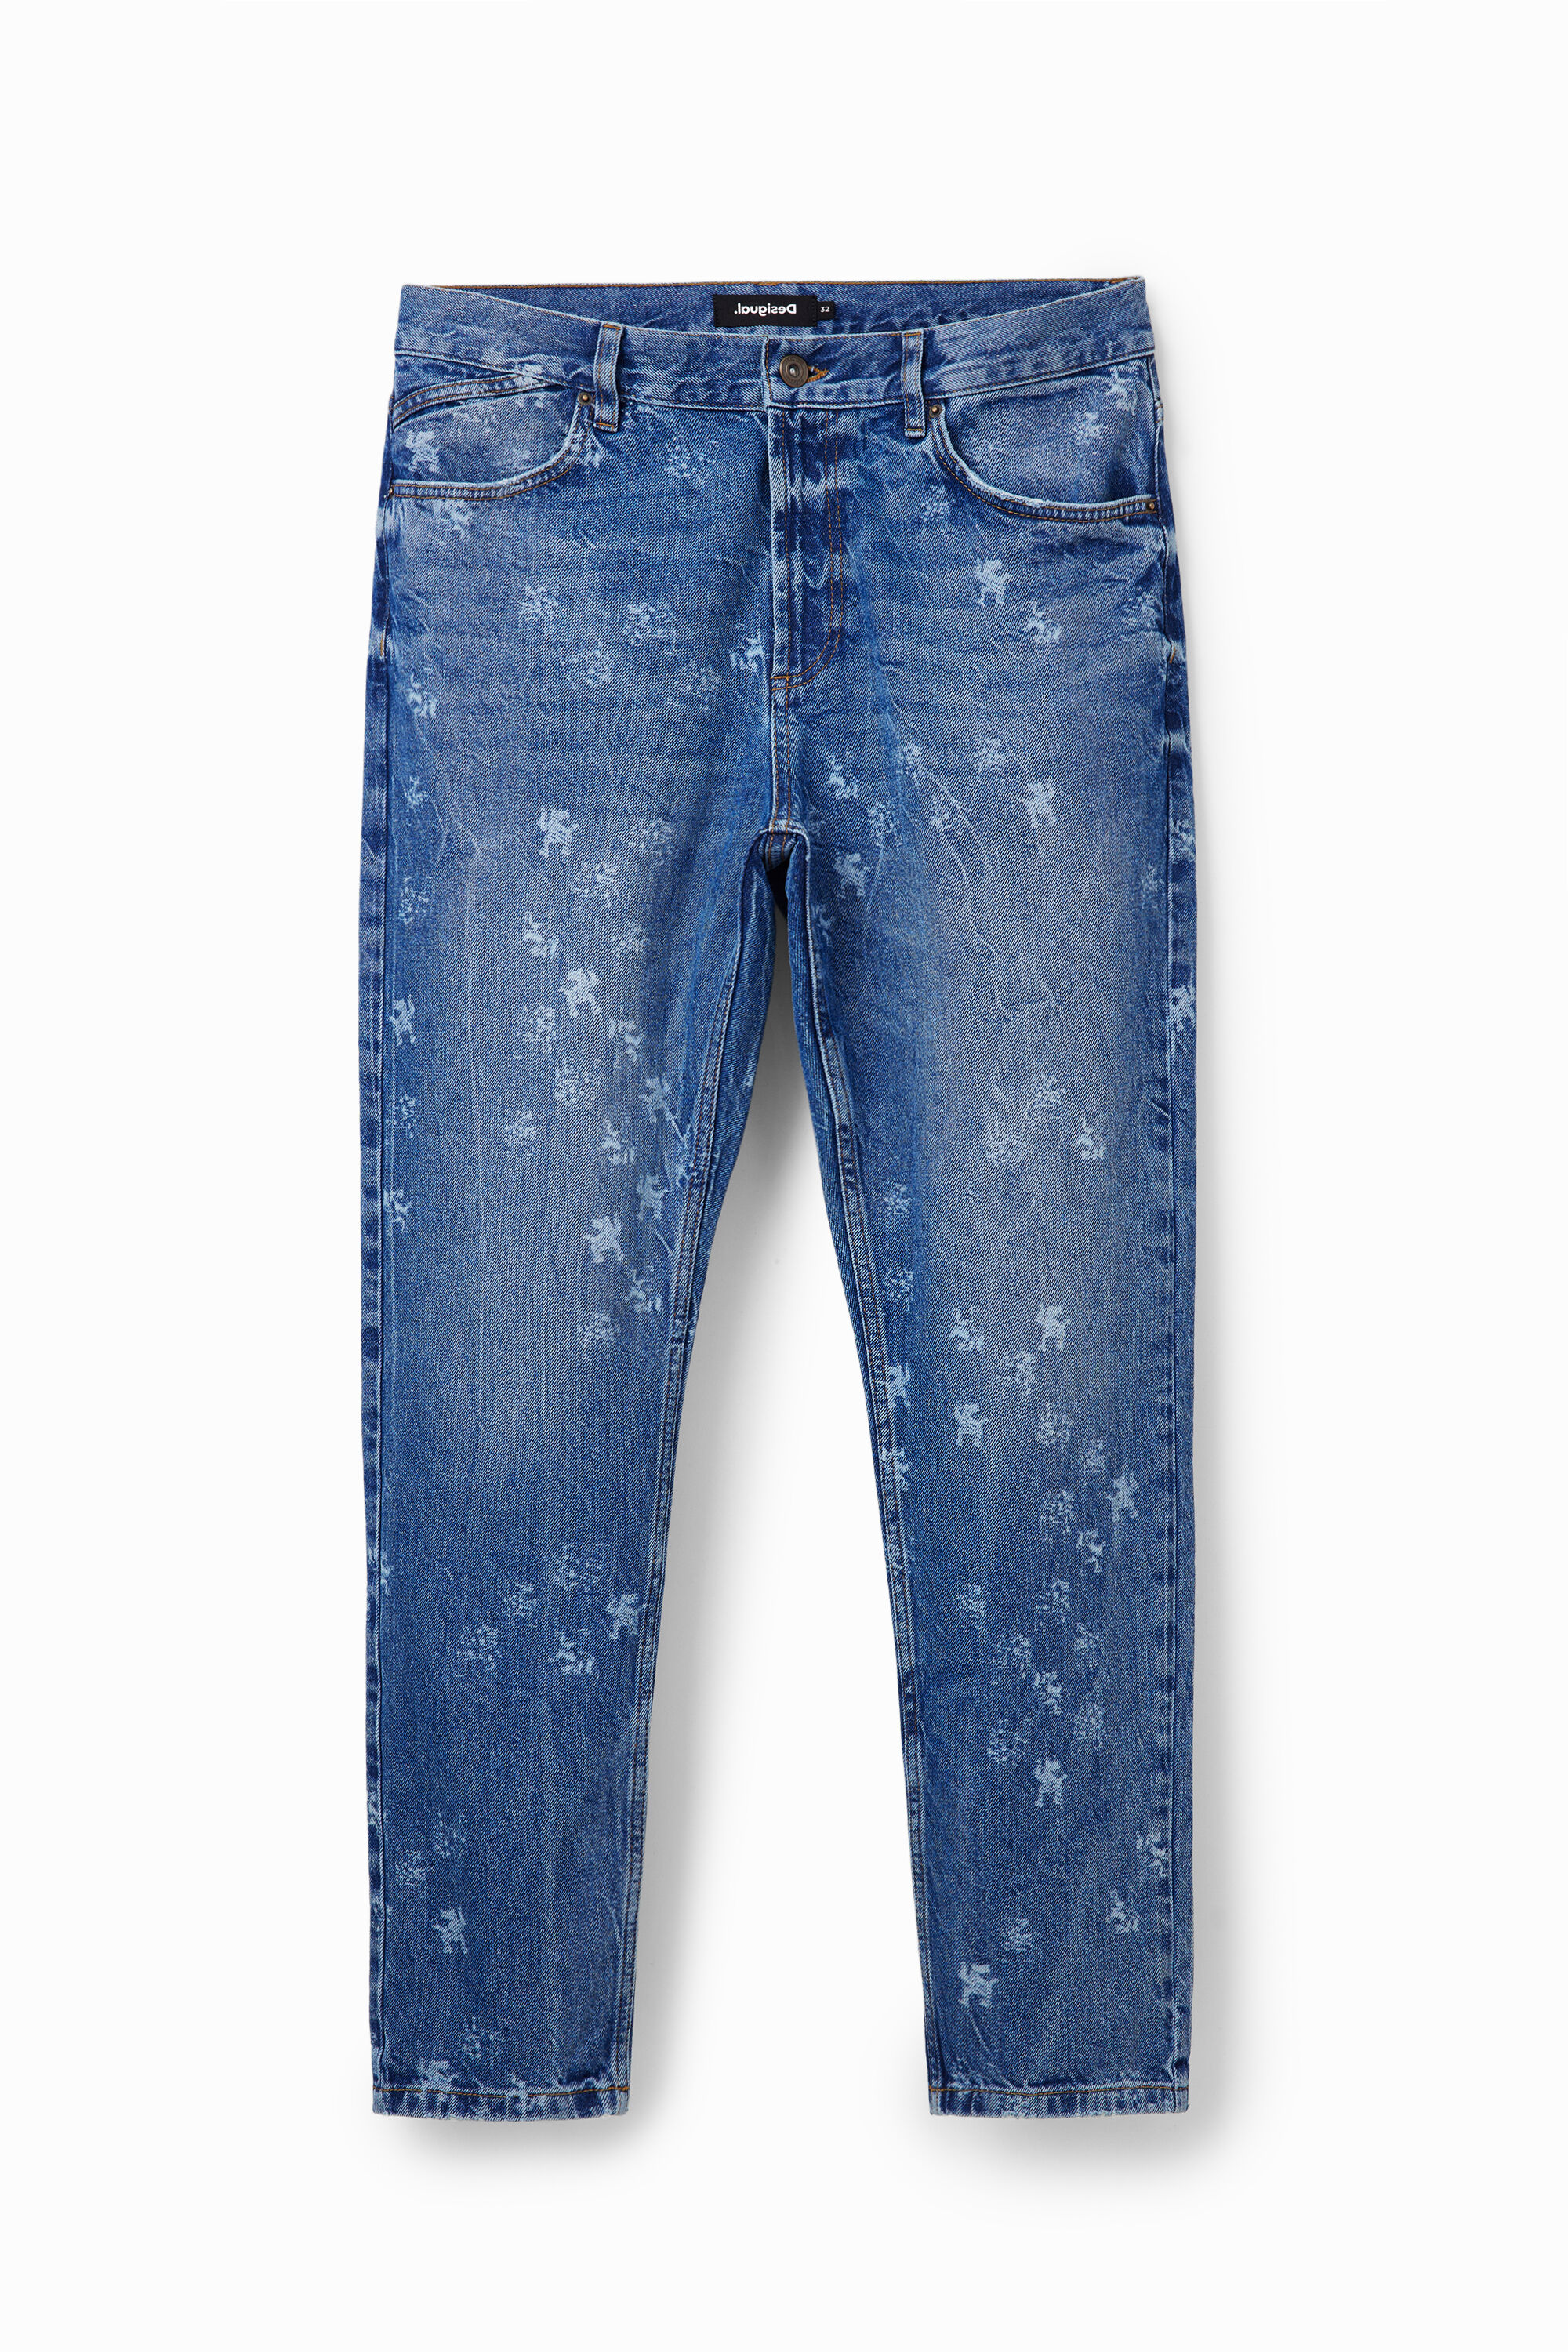 Loose laser print jeans - BLUE - 36